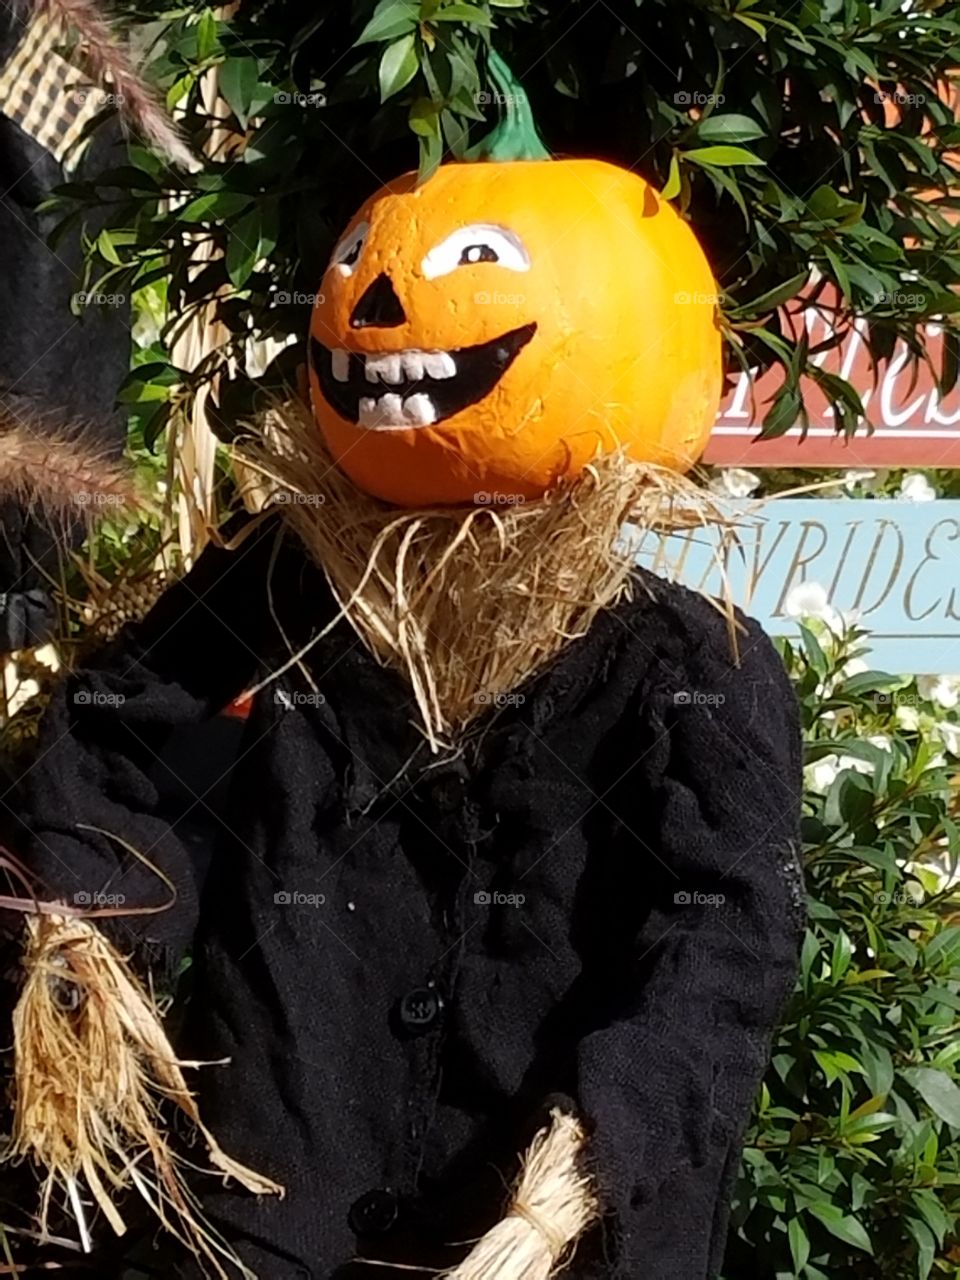 Pumpkin head scarecrow for Halloween